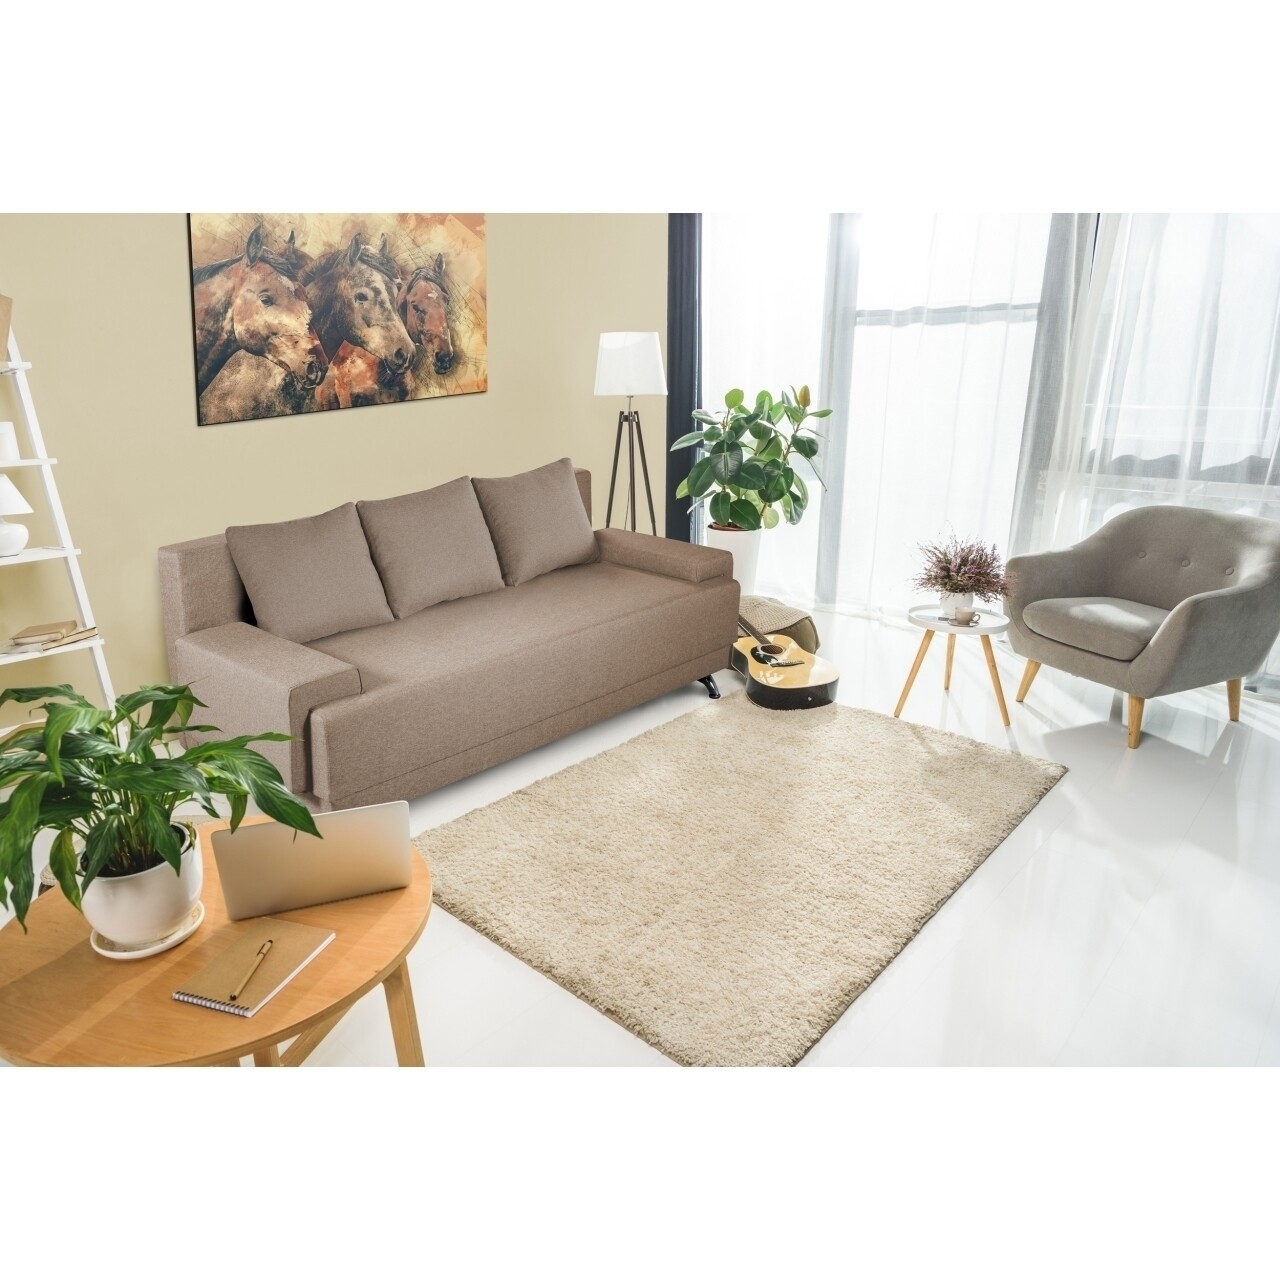 Roma bedora kihúzható kanapé 205x90x86 cm + tárolóládával, bézs